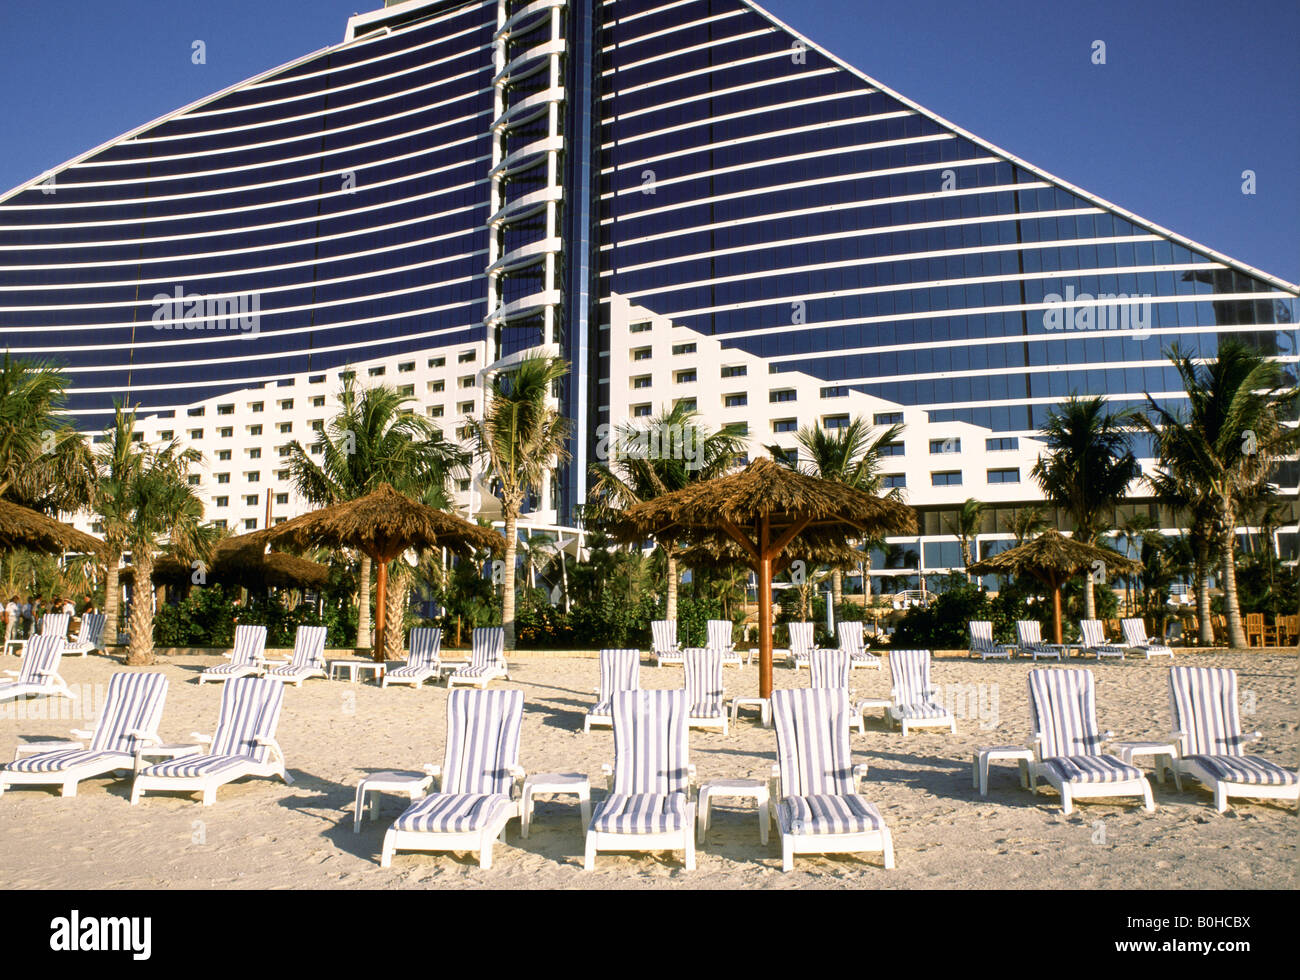 Un hôtel et beach, Dubai, Émirats arabes unis. Banque D'Images